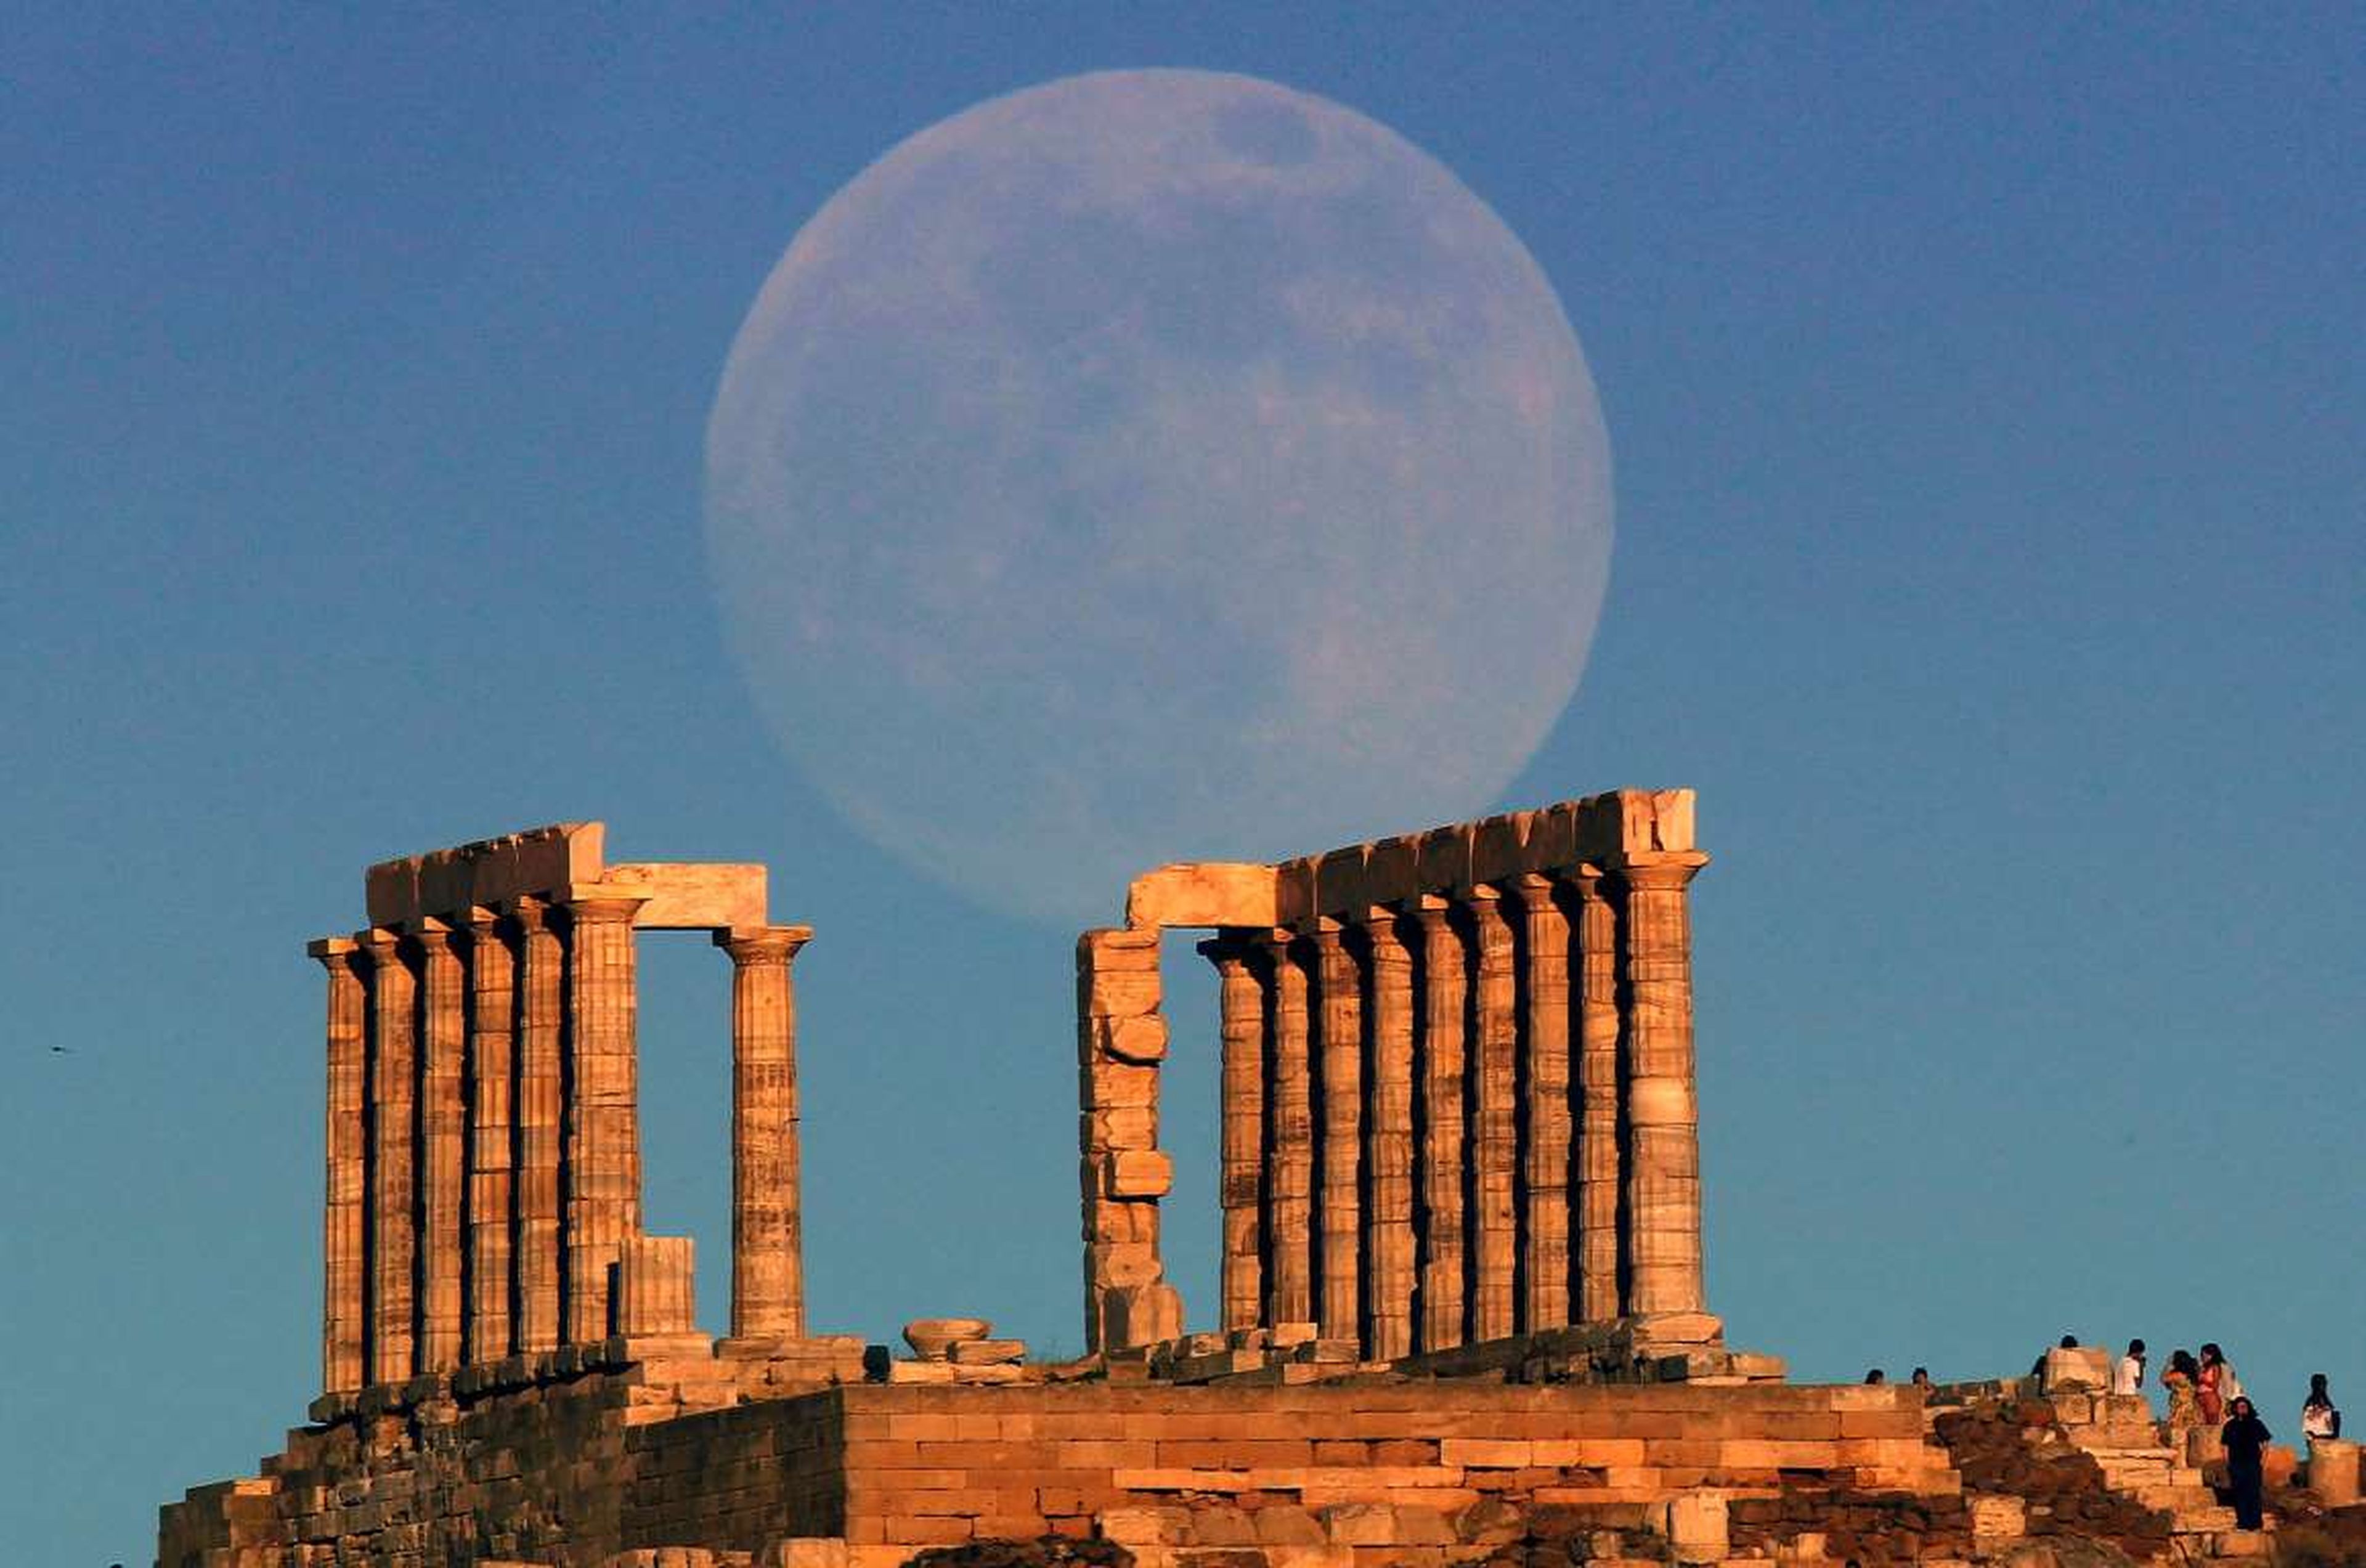 La súper luna se eleva sobre el templo de Poseidón, el dios griego de los mares, en Cabo Sunion, Grecia.